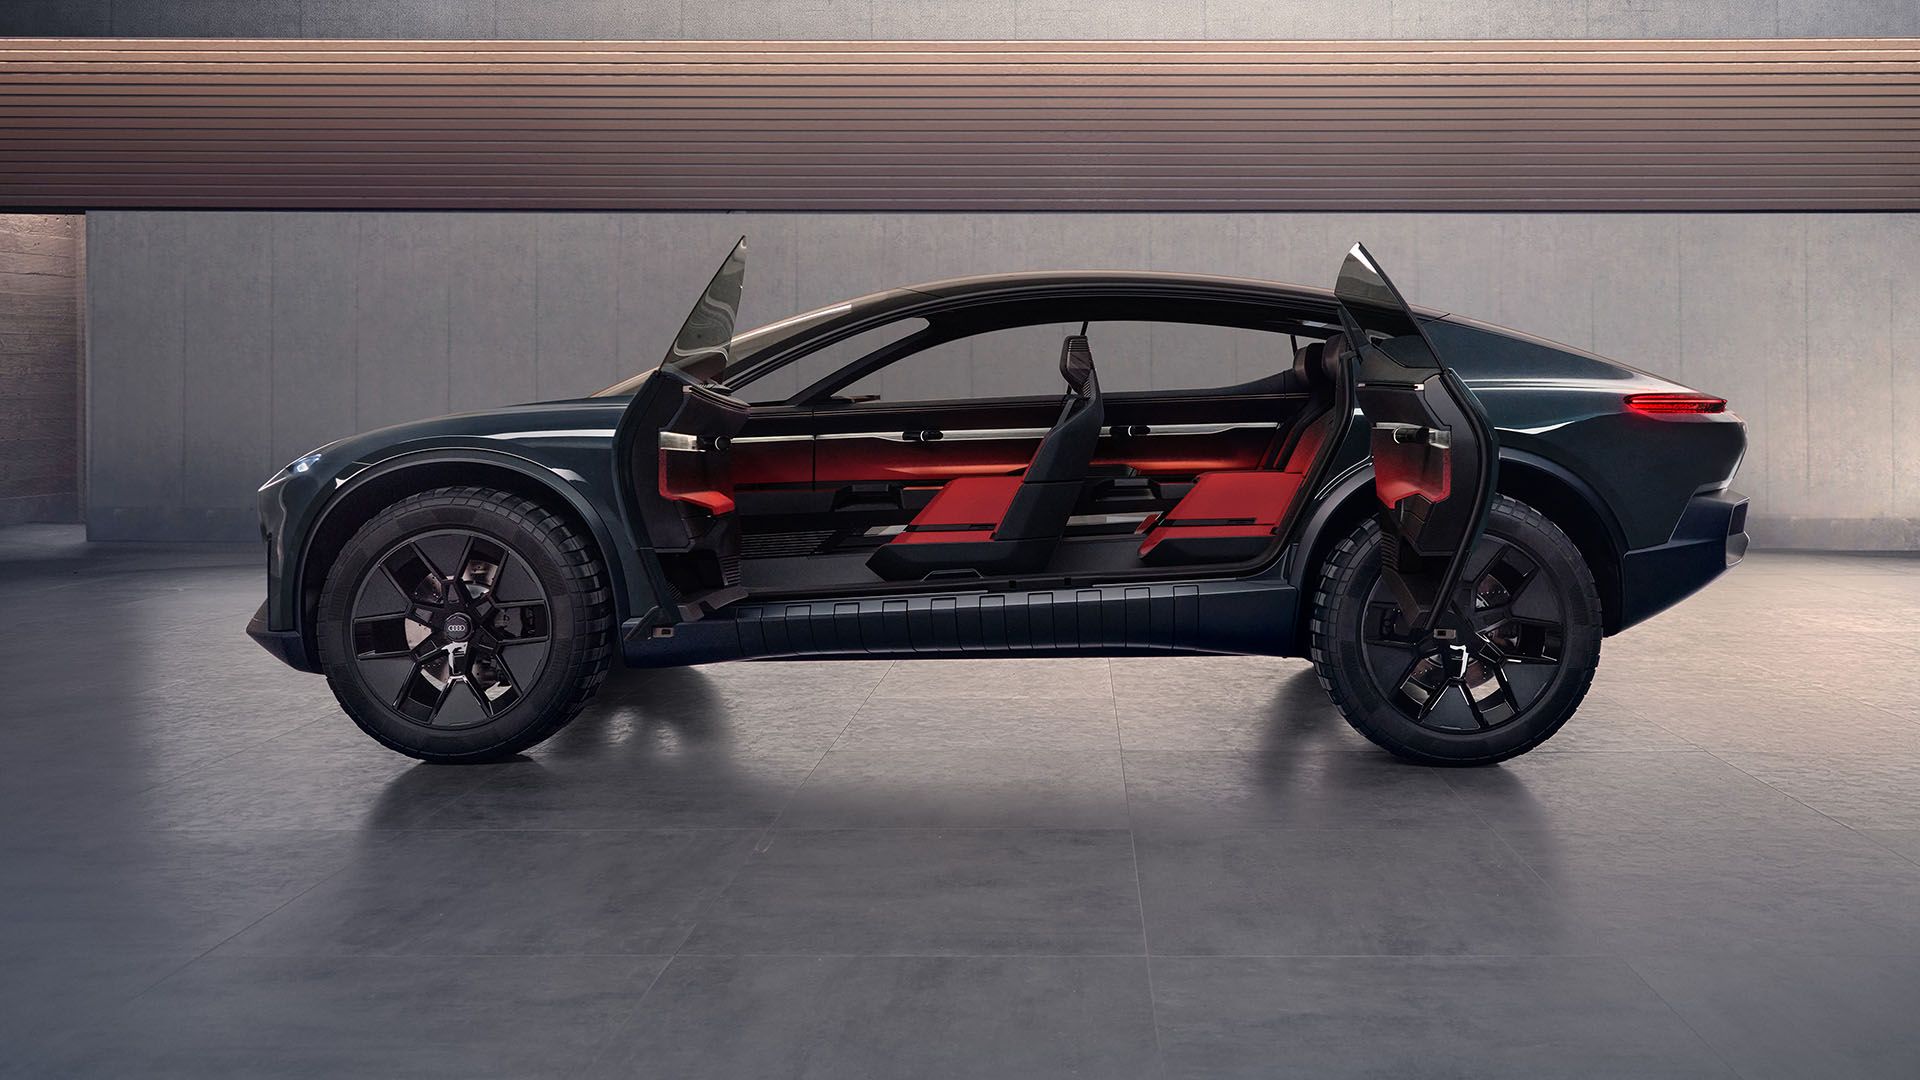 Las puertas del Audi activesphere concept, abiertas, permiten ver el interior del vehículo.